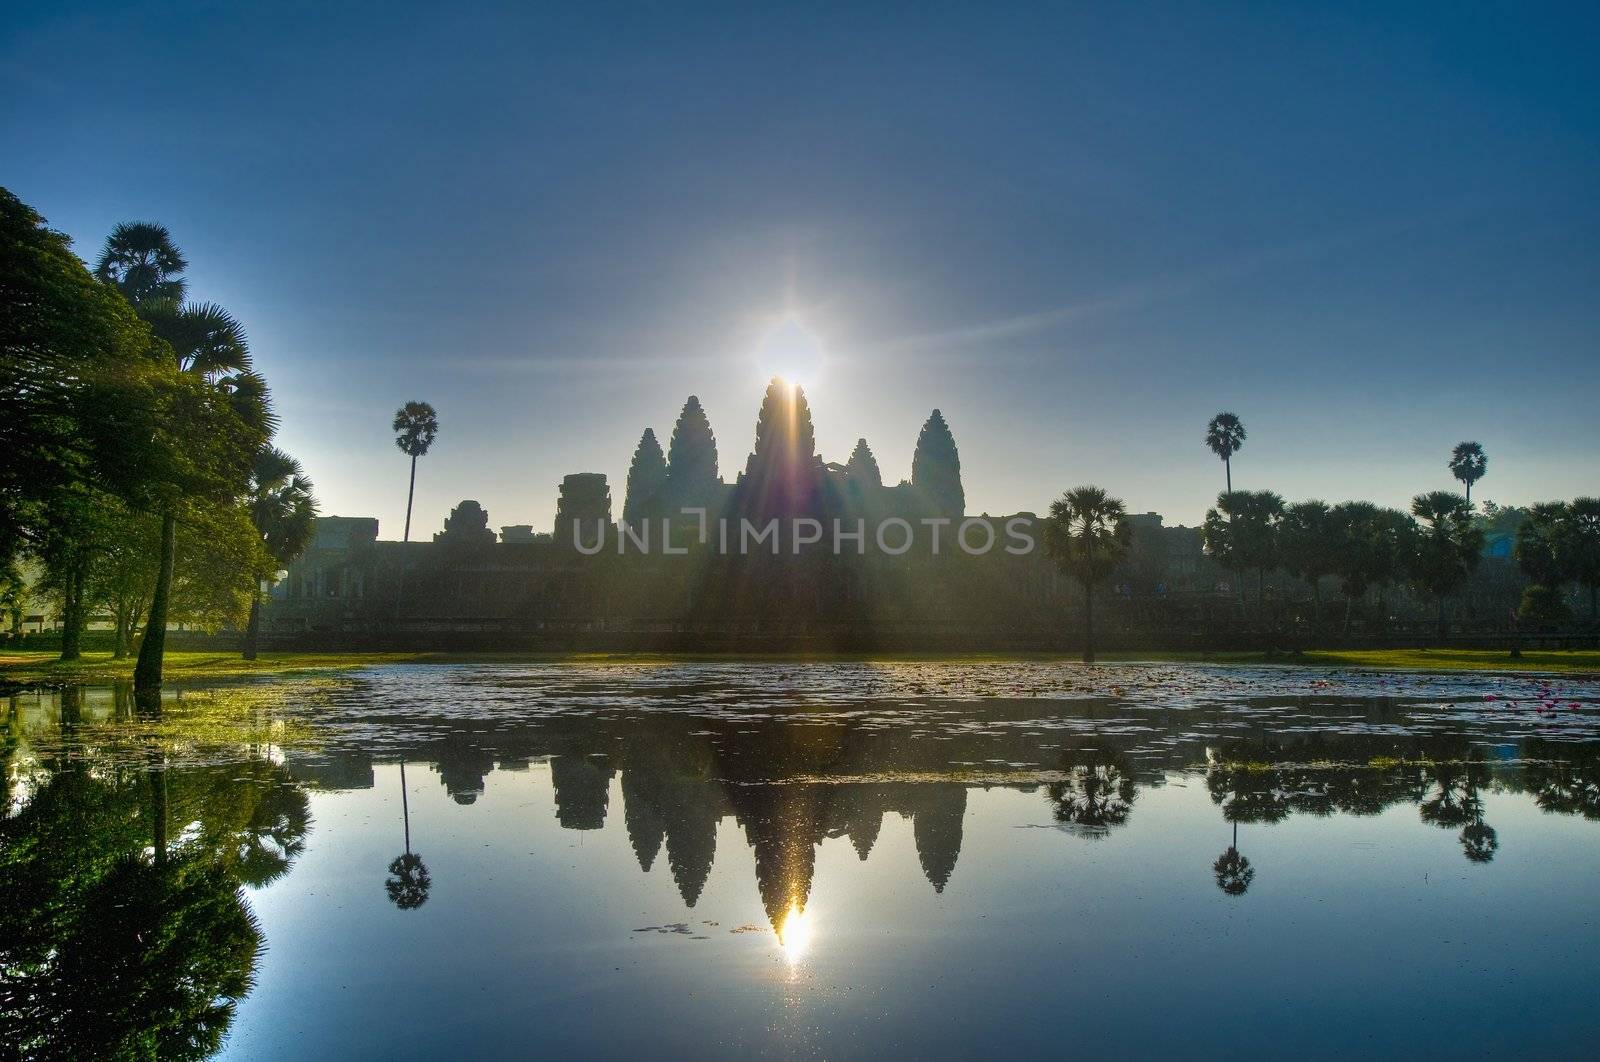 Angkor Wat entrance within the Angkor Temples, Cambodia